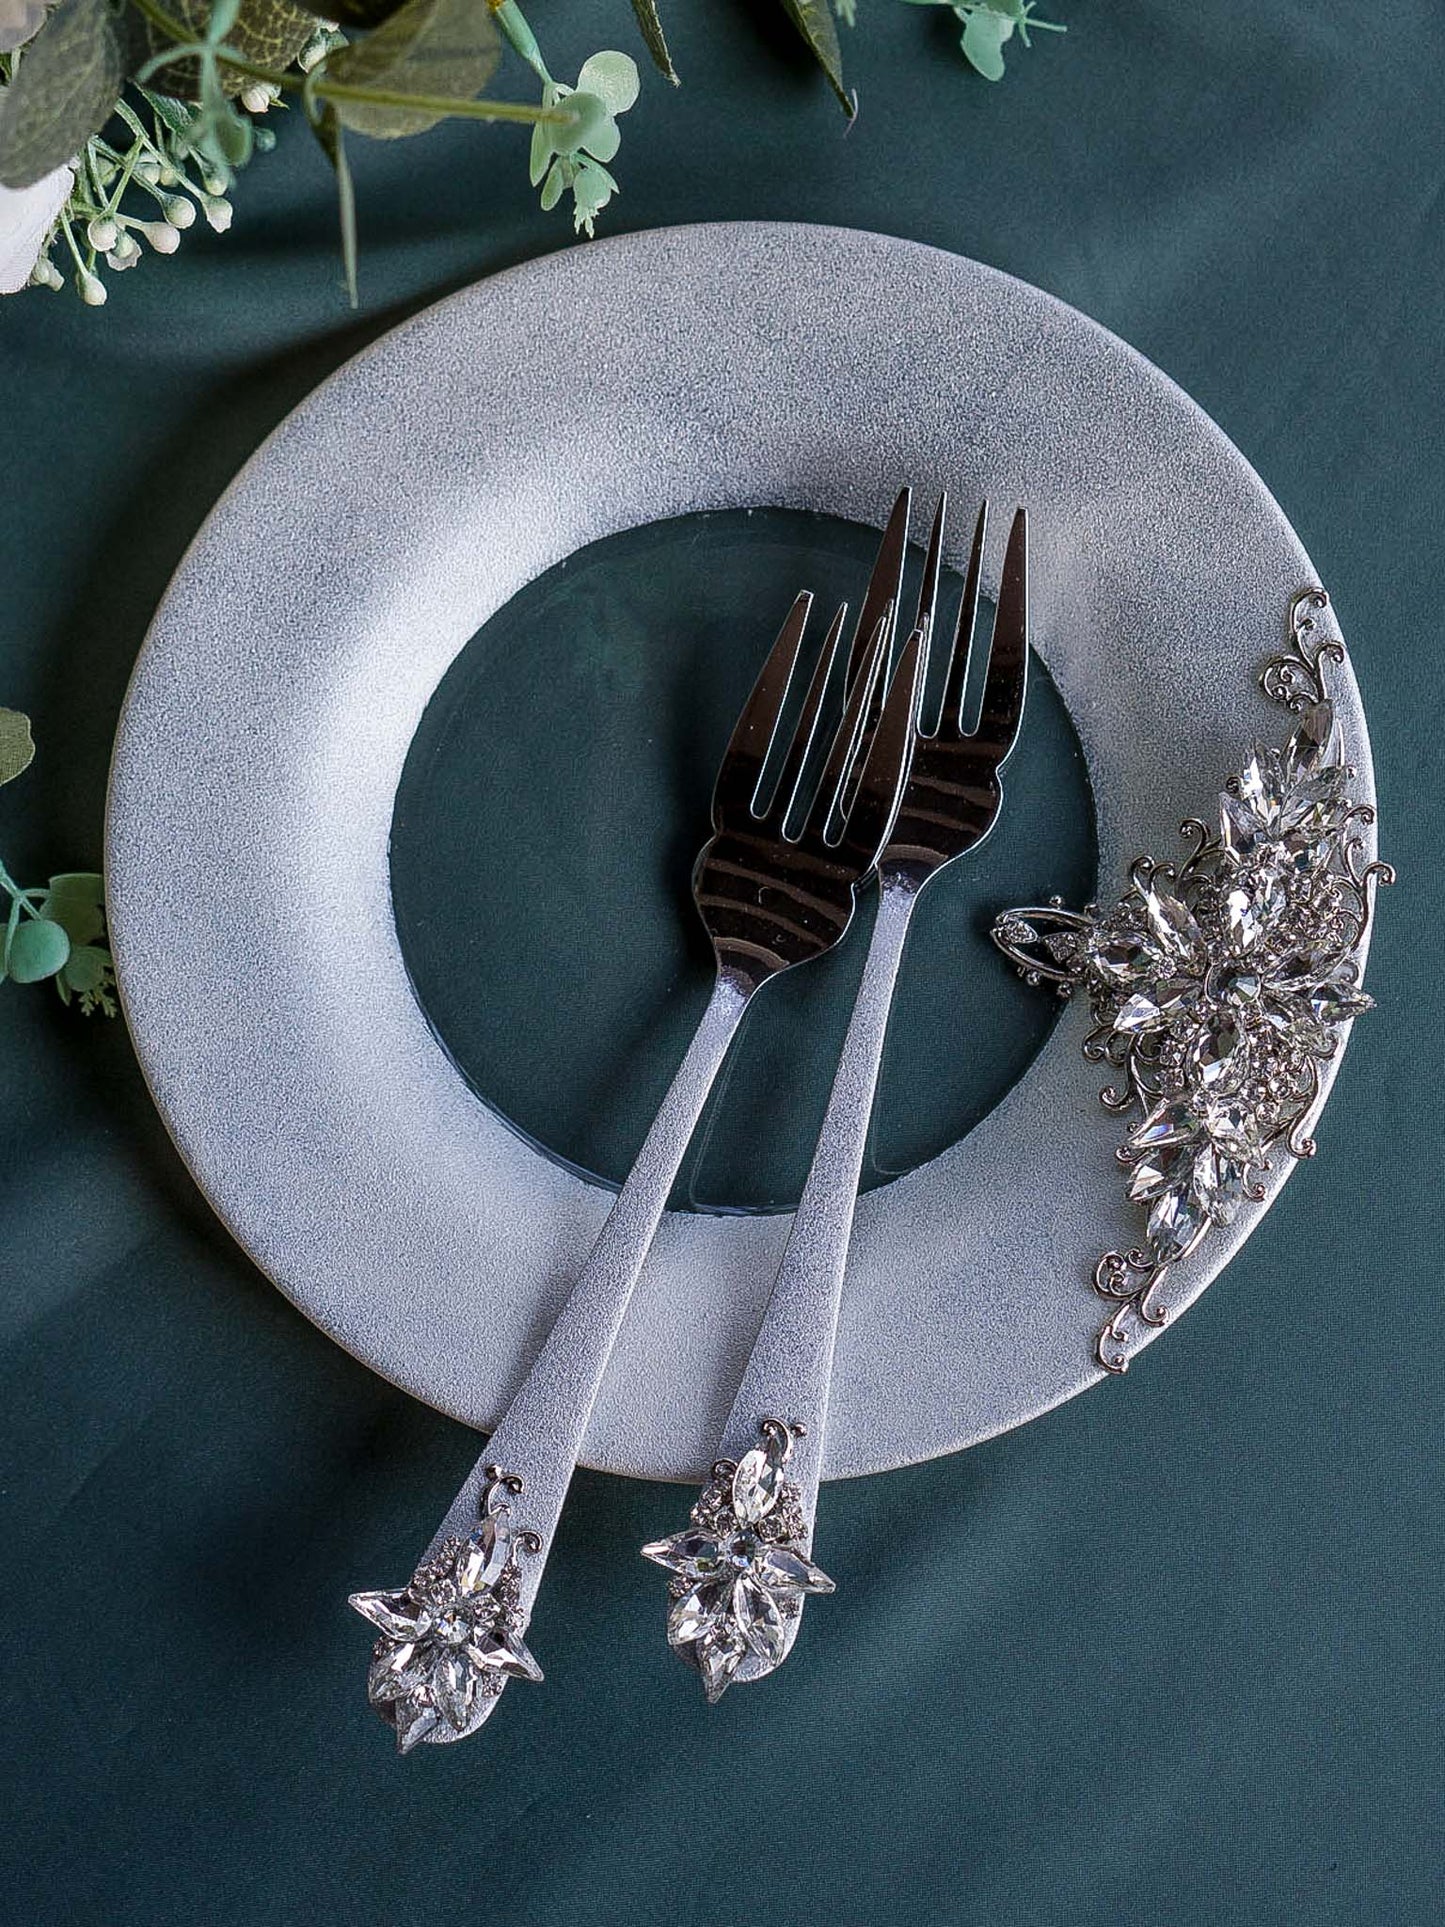 Elegant Silver Crystals Engraved Wedding Dessert Forks and Plate Set